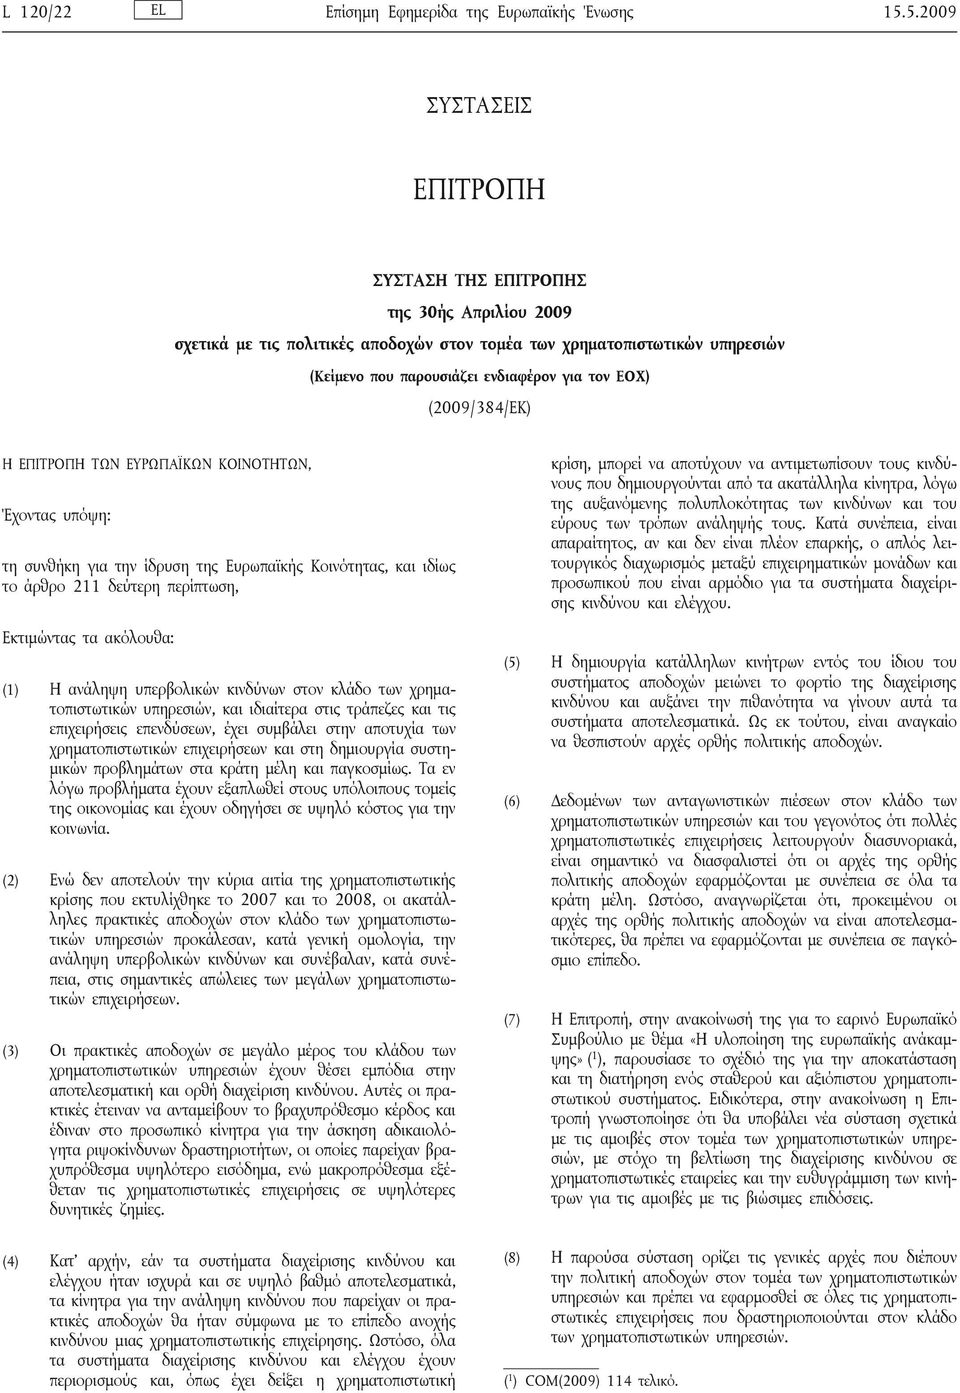 (2009/384/ΕΚ) Η ΕΠΙΤΡΟΠΗ ΤΩΝ ΕΥΡΩΠΑΪΚΩΝ ΚΟΙΝΟΤΗΤΩΝ, Έχοντας υπόψη: τη συνθήκη για την ίδρυση της Ευρωπαϊκής Κοινότητας, και ιδίως το άρθρο 211 δεύτερη περίπτωση, Εκτιμώντας τα ακόλουθα: (1) Η ανάληψη